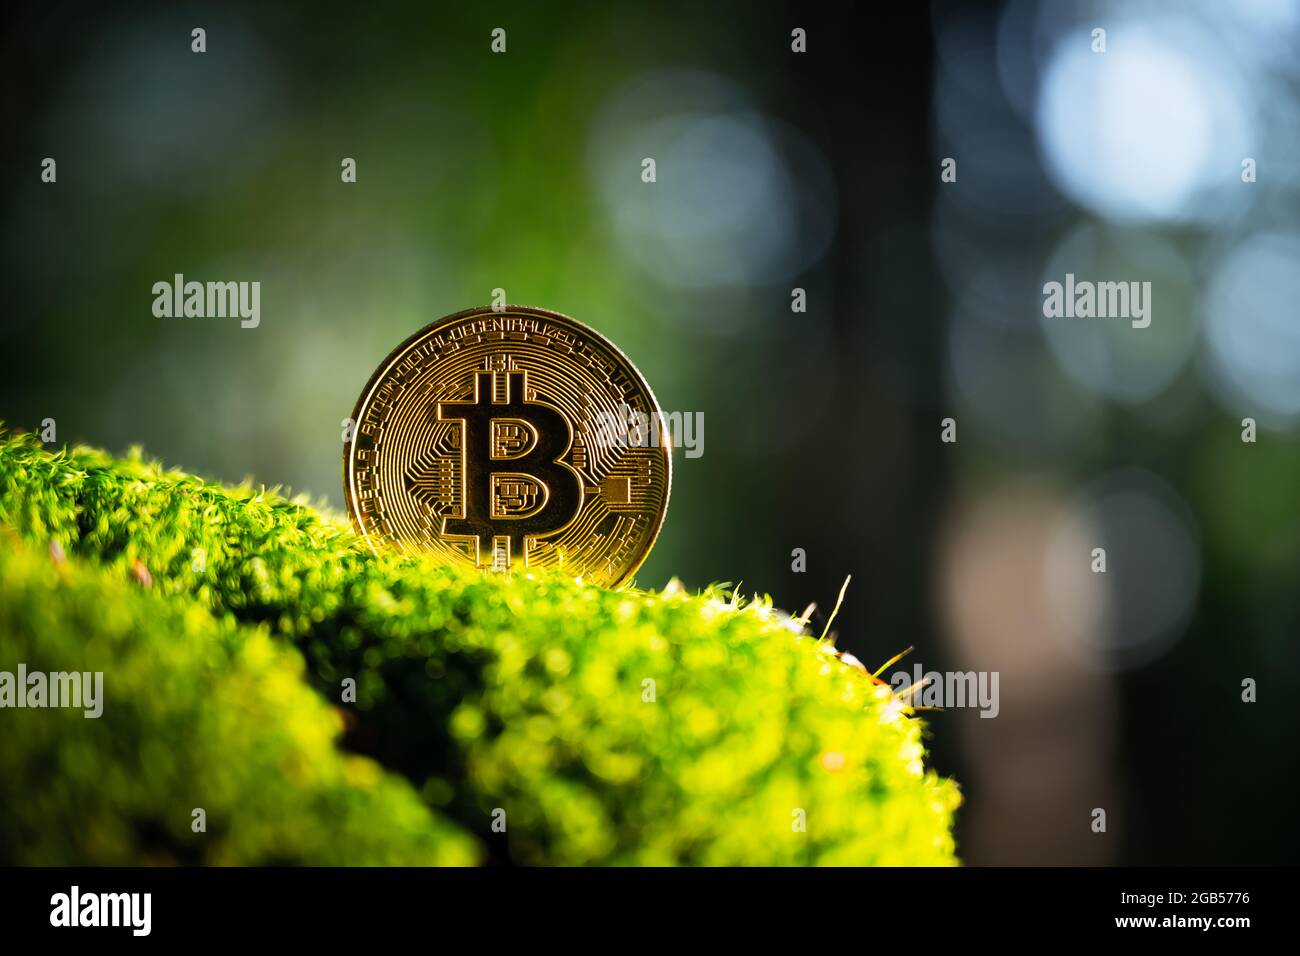 Pièce de bitcoin dorée sur une mousse verte luxuriante dans la forêt d'été. Concept de crypto-monnaie écologique Banque D'Images